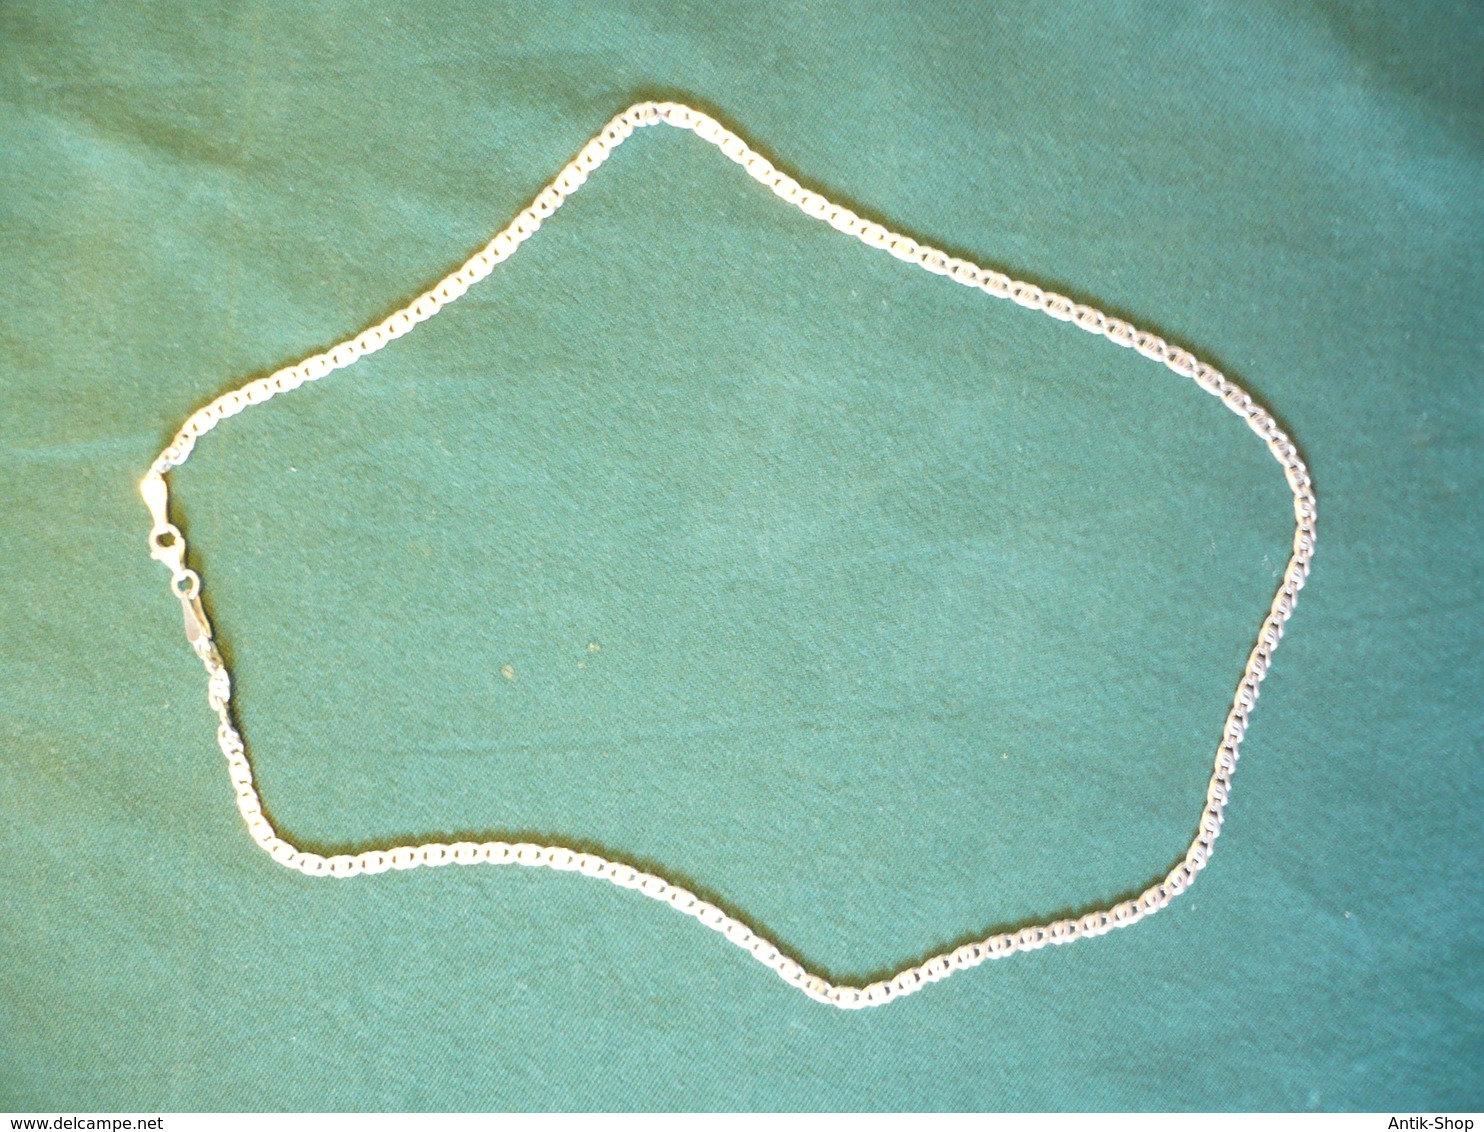 Sterling-Silber Herren-Halskette  (554) Preis Reduziert - Collane/Catenine